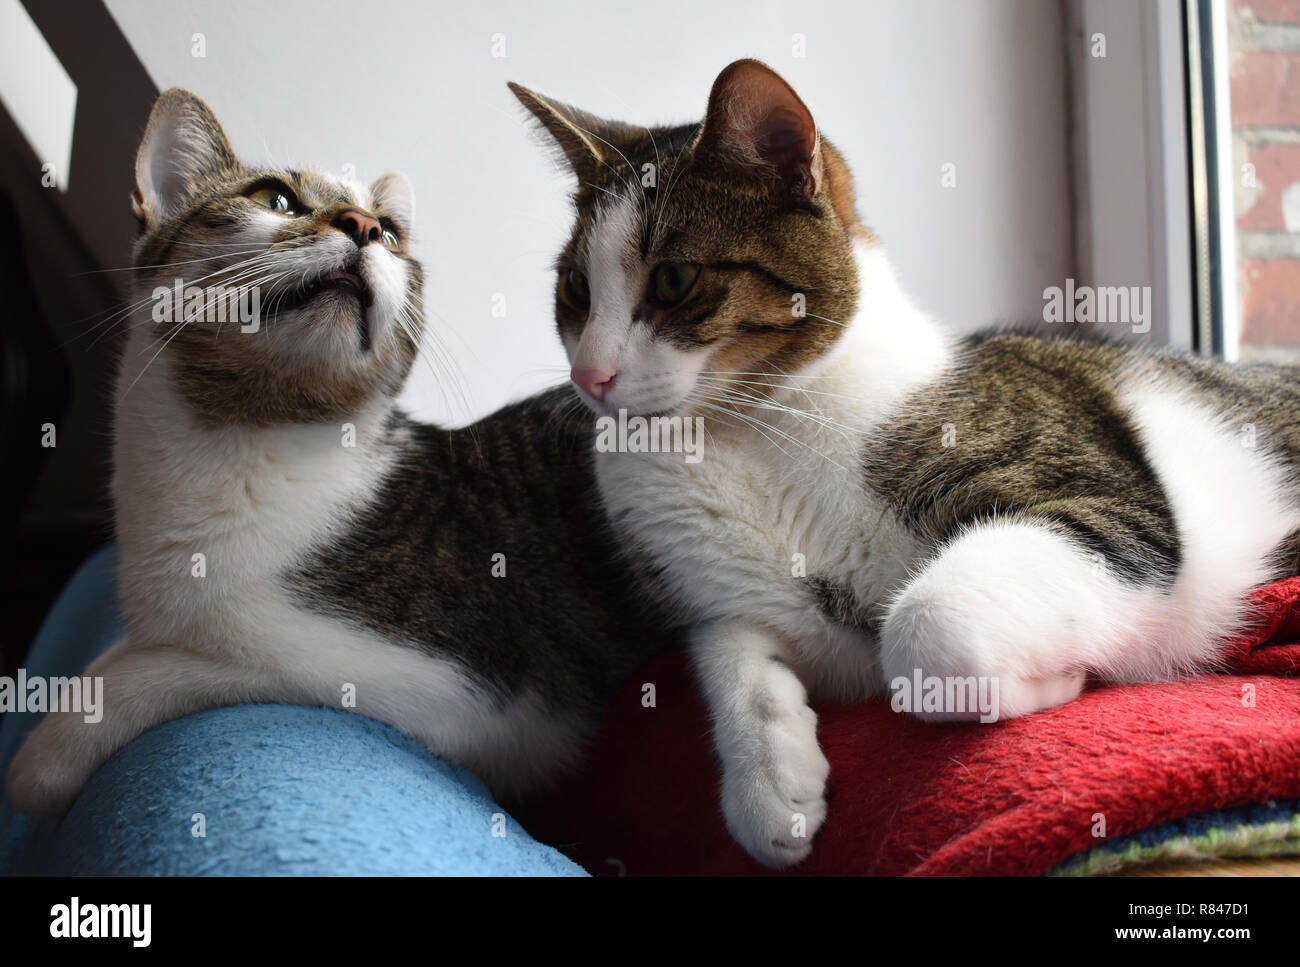 Zwei streunende Katzen liegen auf roten und blauen Decken. Furry felines Geschwister. Stockfoto